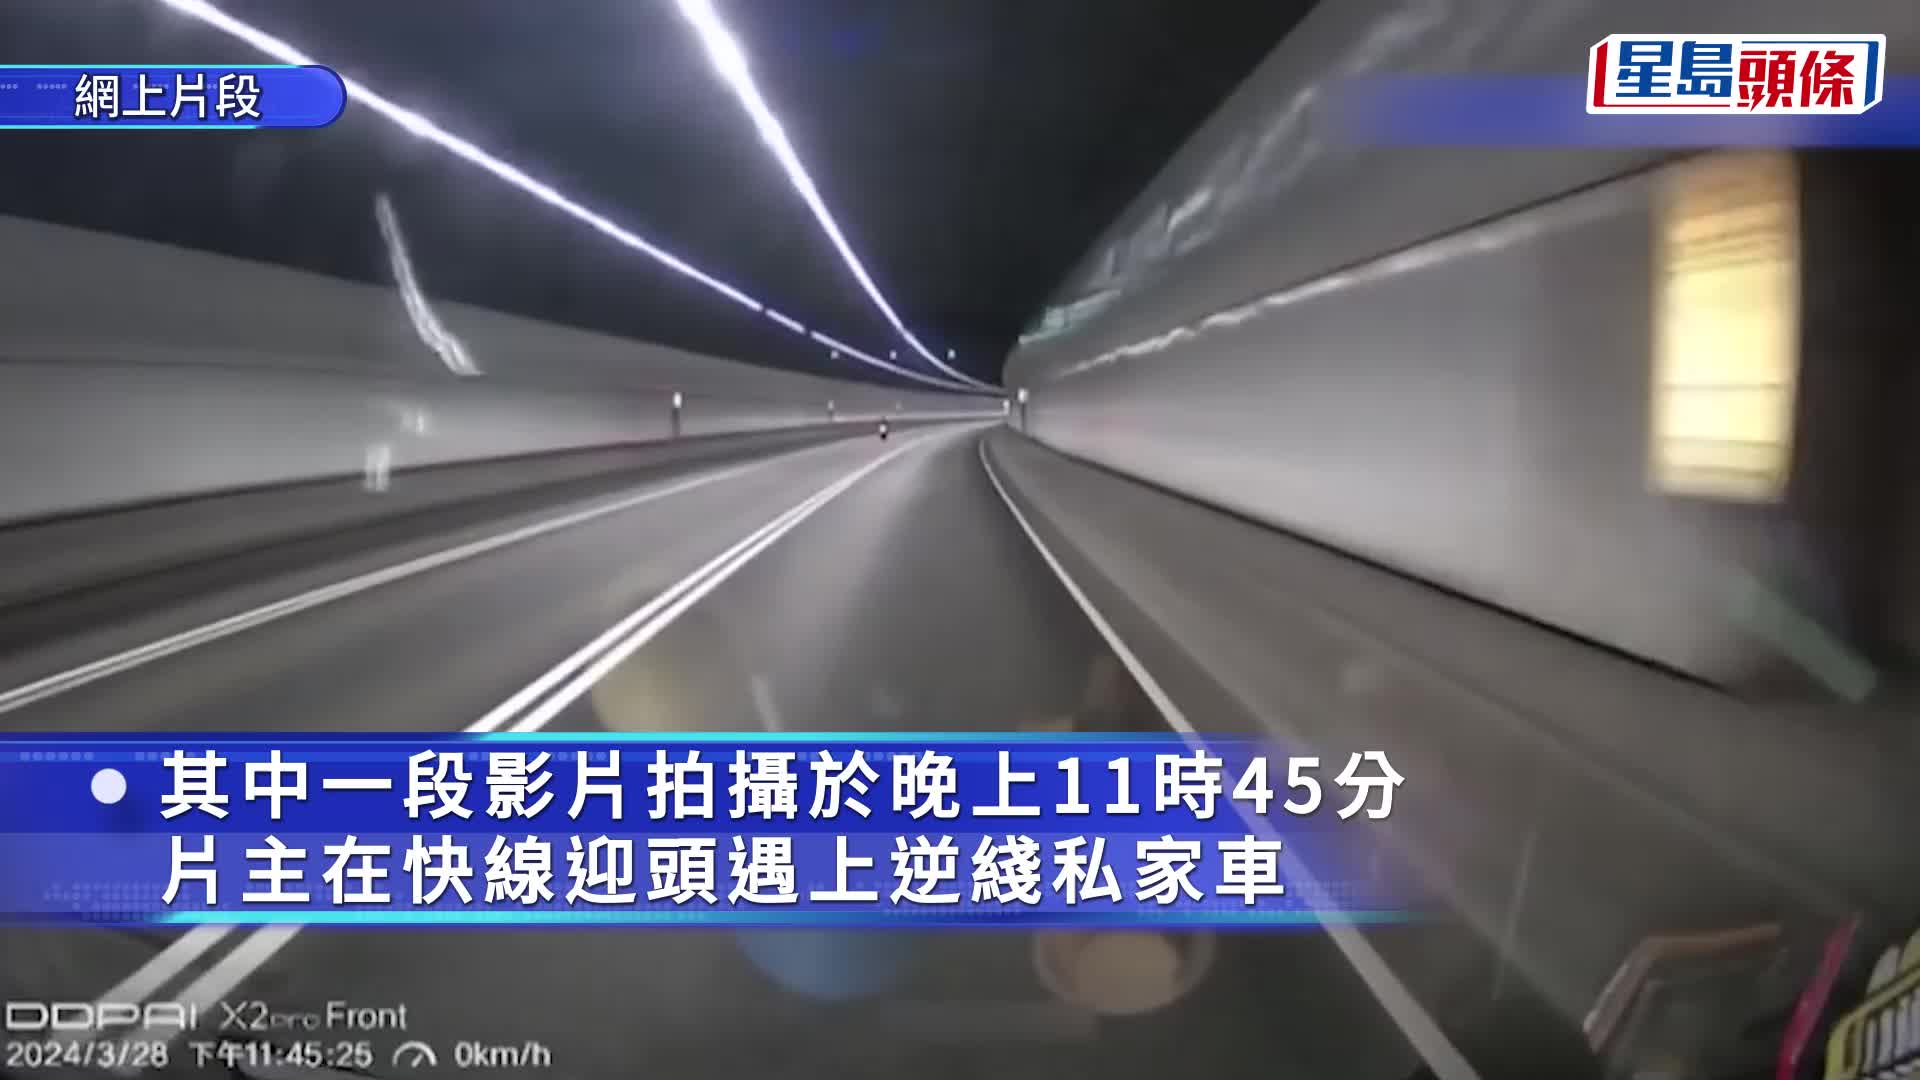 尖山隧道內私家車逆線行駛 疑為避路障截查鋌而「走險」